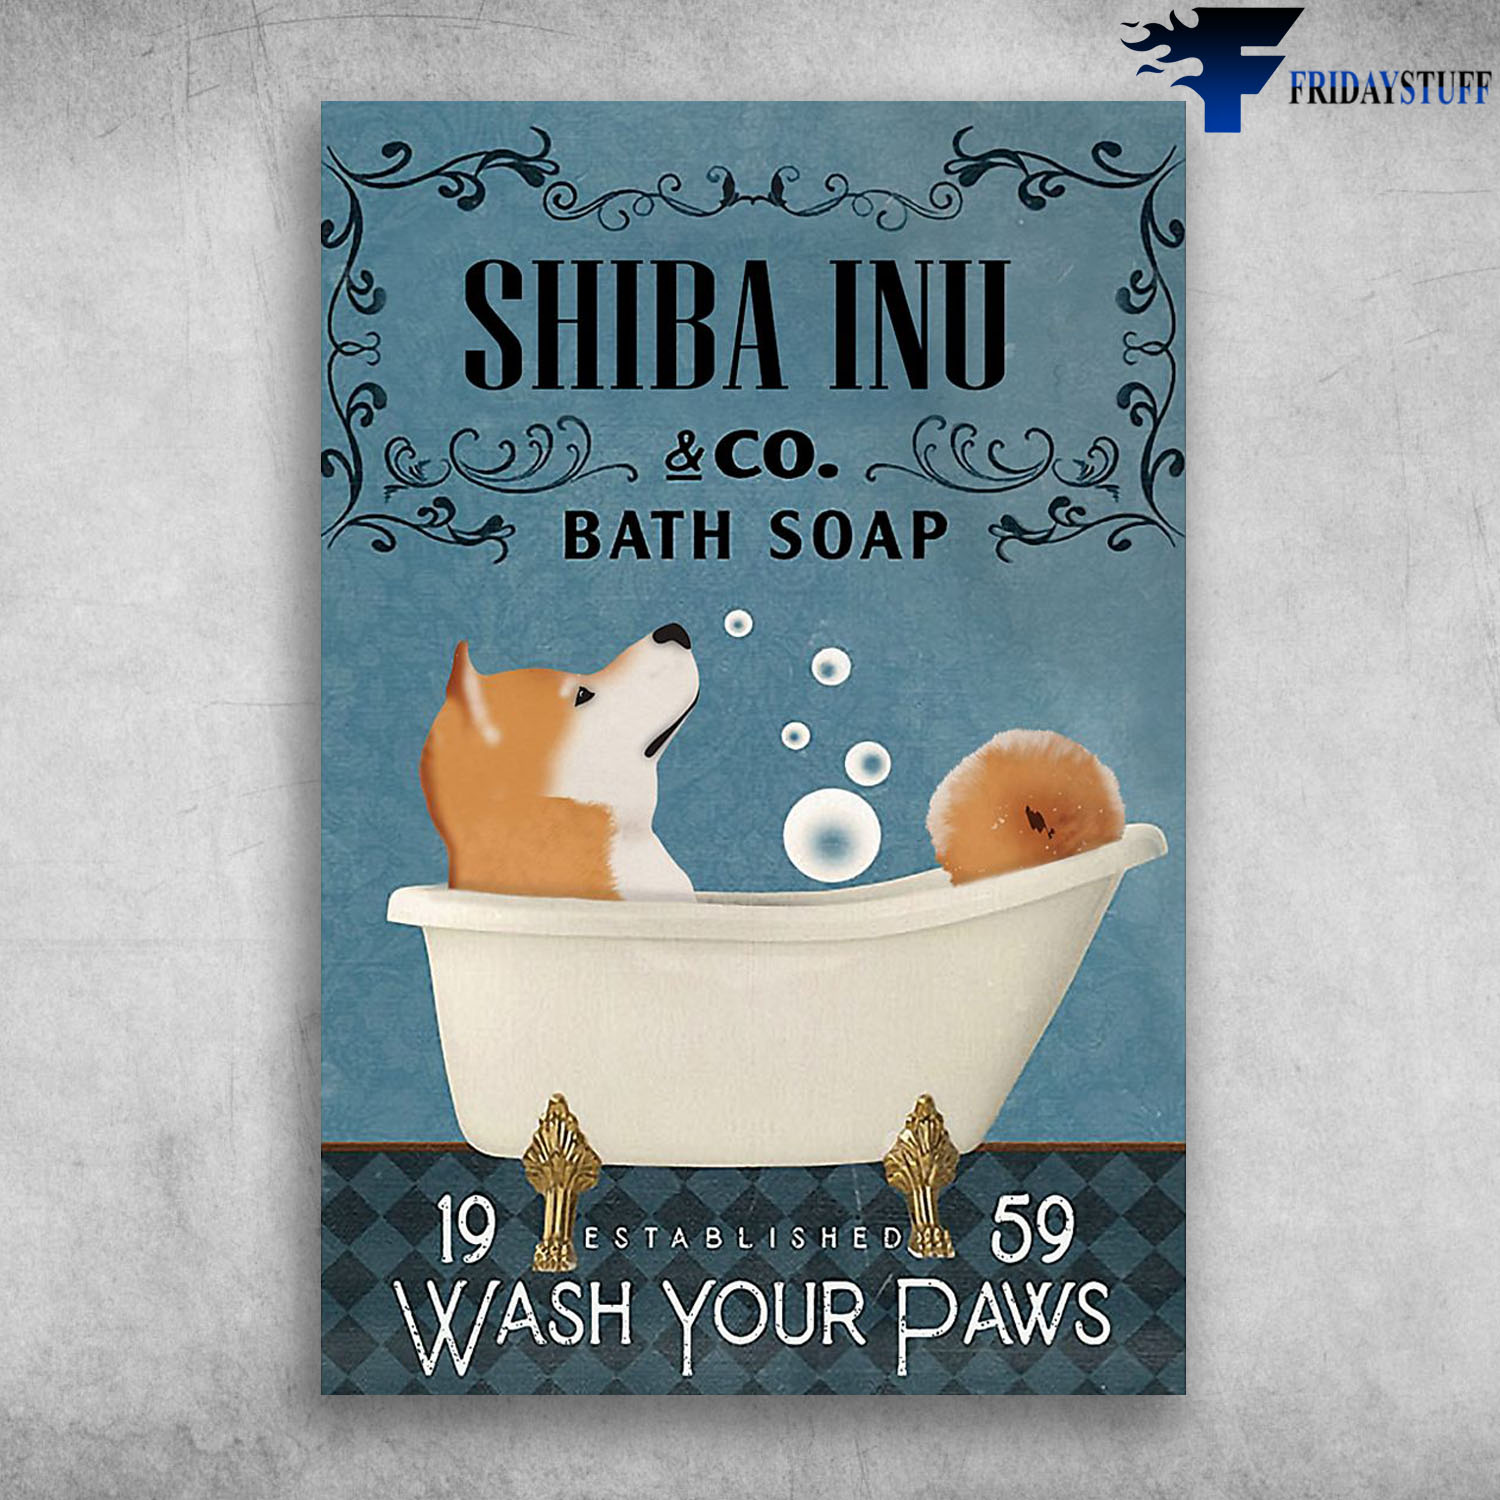 Shiba Inu In Bathtub Bath Soap Established Wash Your Paws